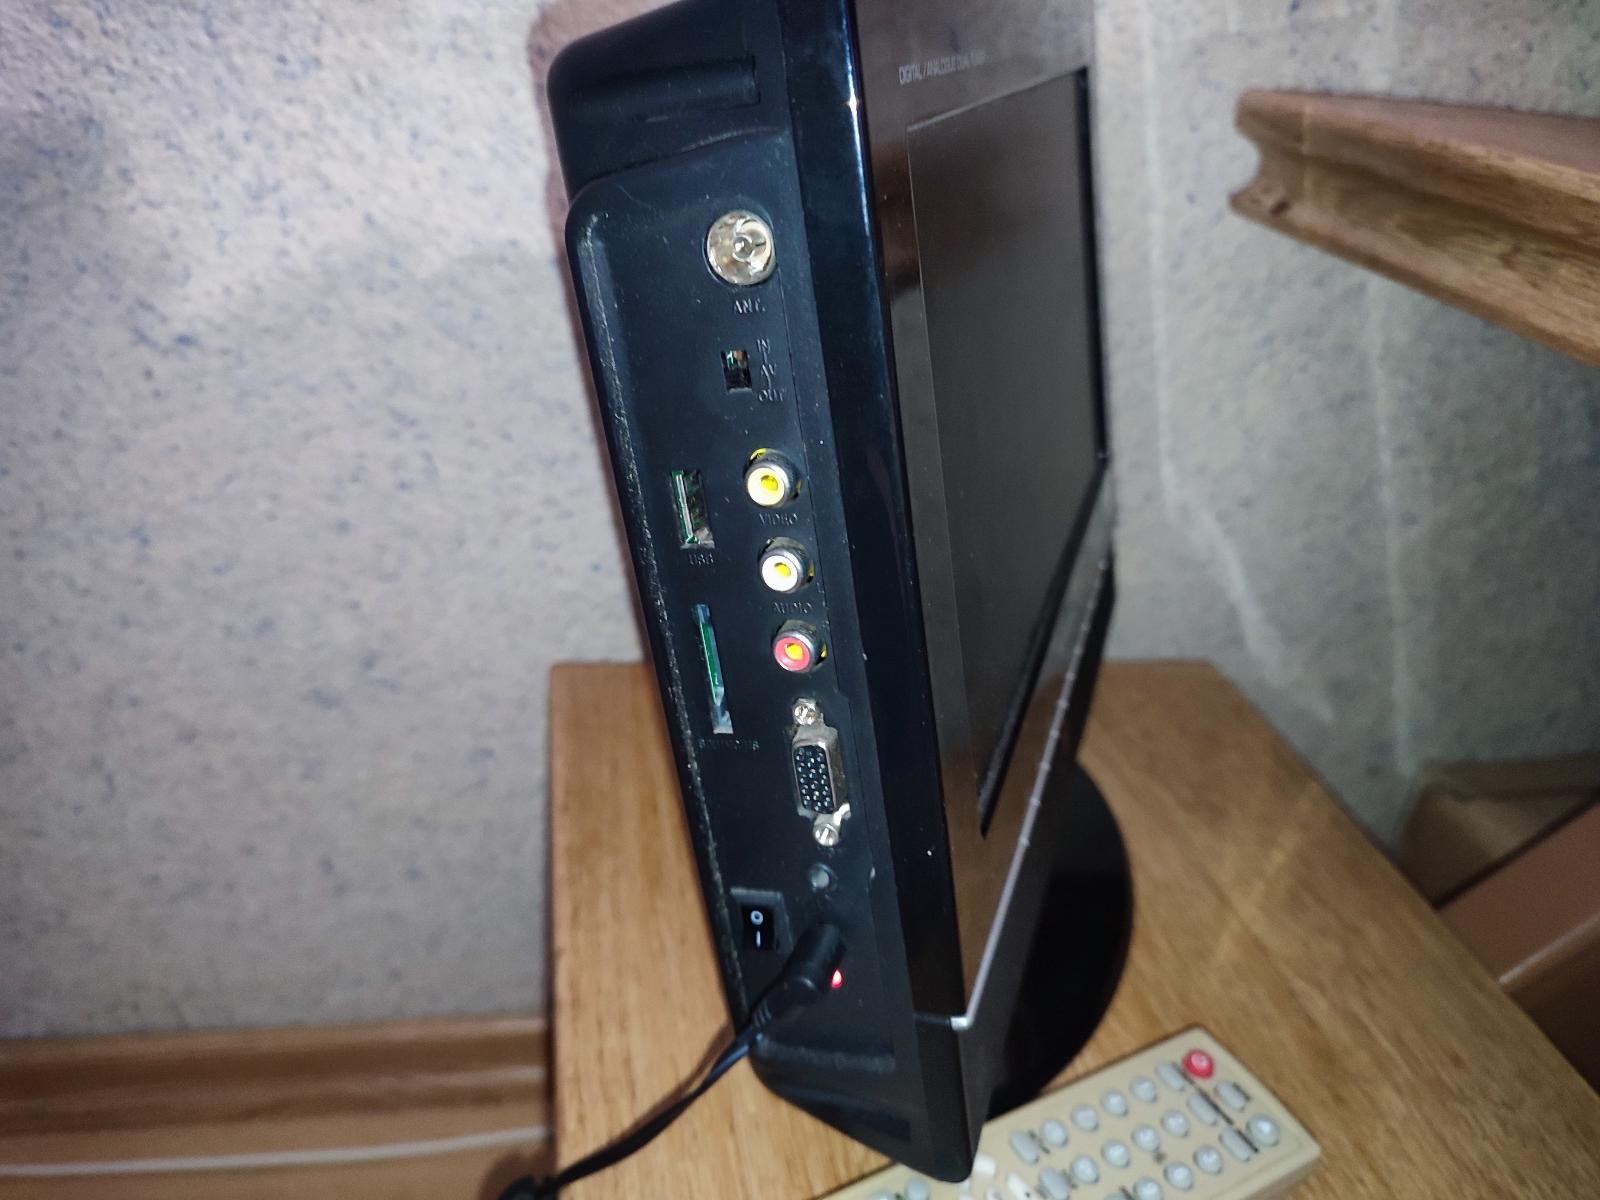 Mini TV Sencor SLT 1055DVDP (DVD, USB, SD) - TV, audio, video